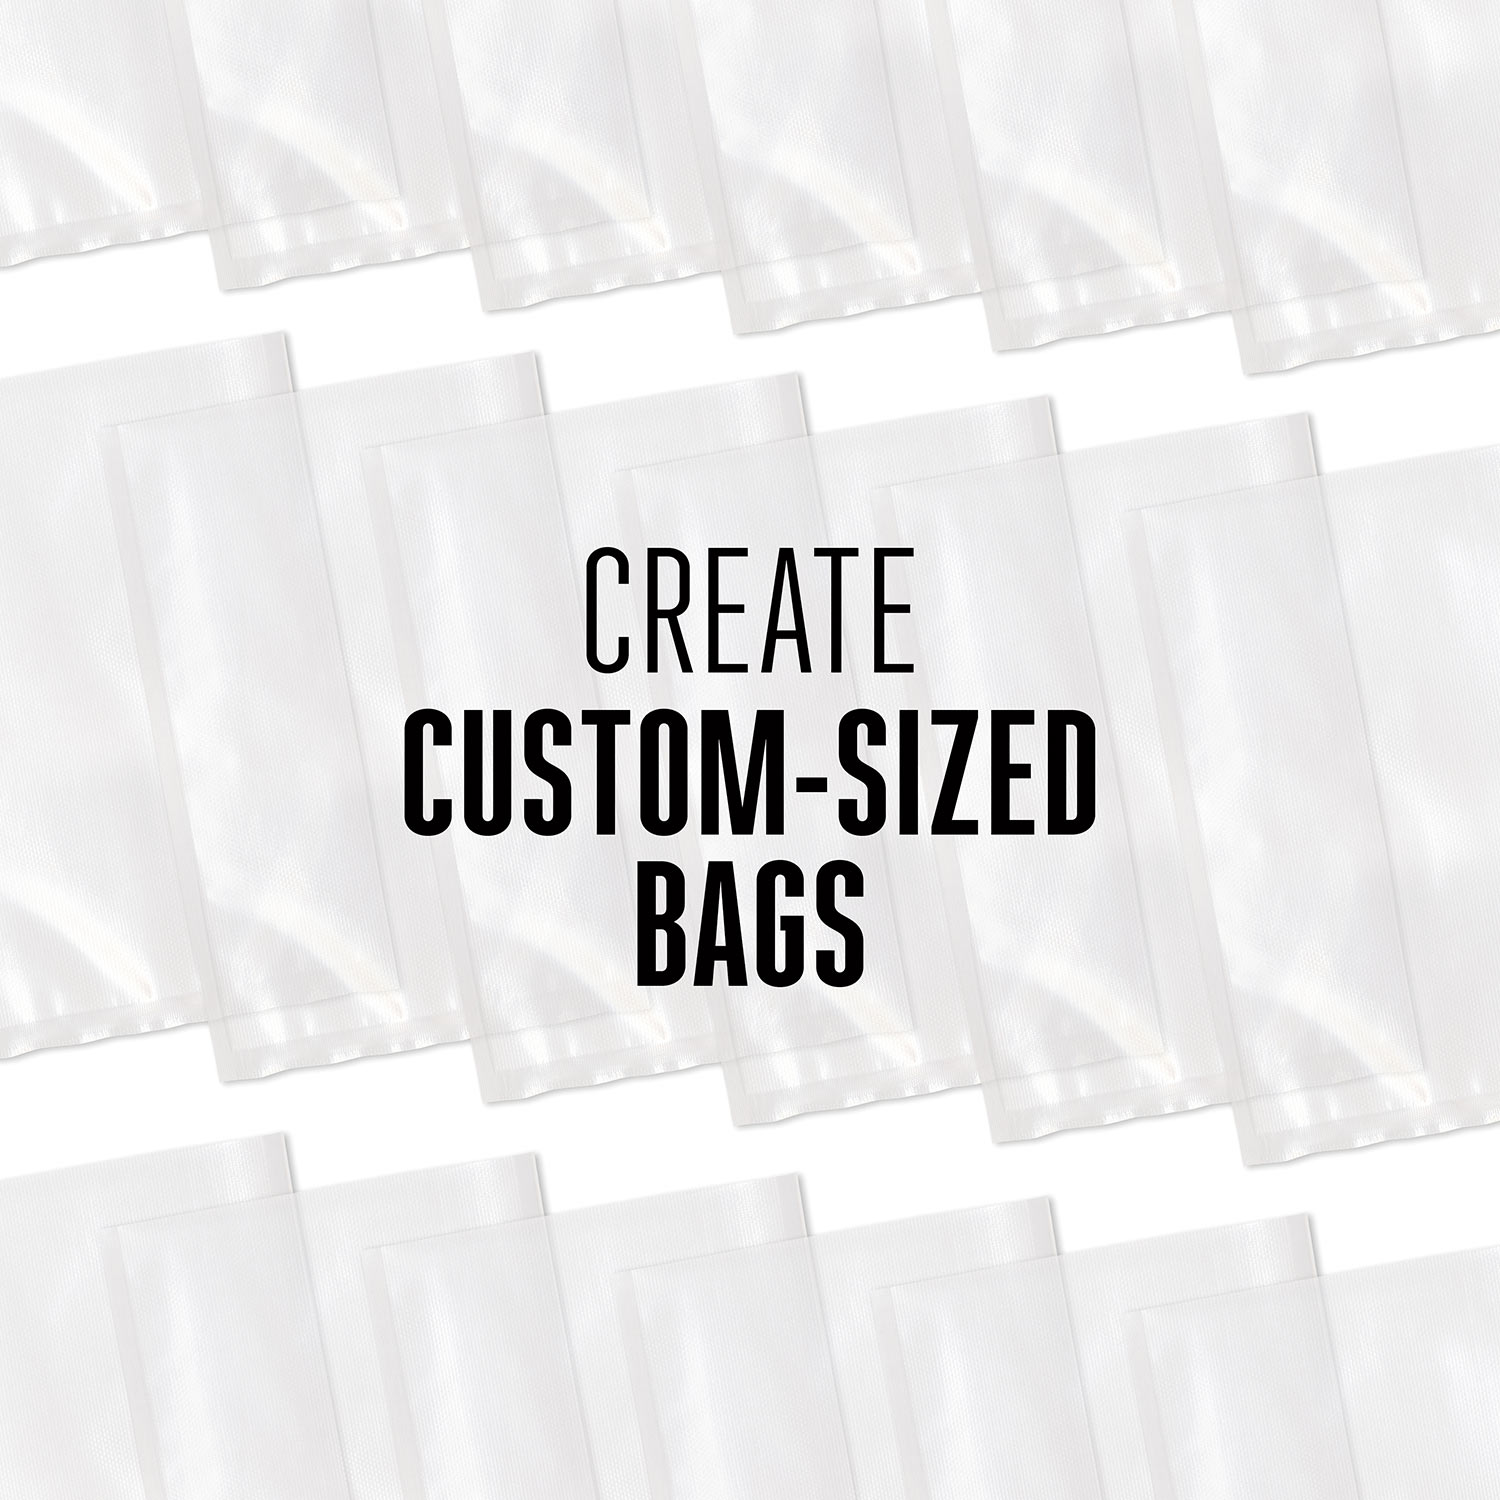 Weston® Vacuum Sealer Bags, 11 in x 18 ft Roll 3-Pack - 30-0202-W